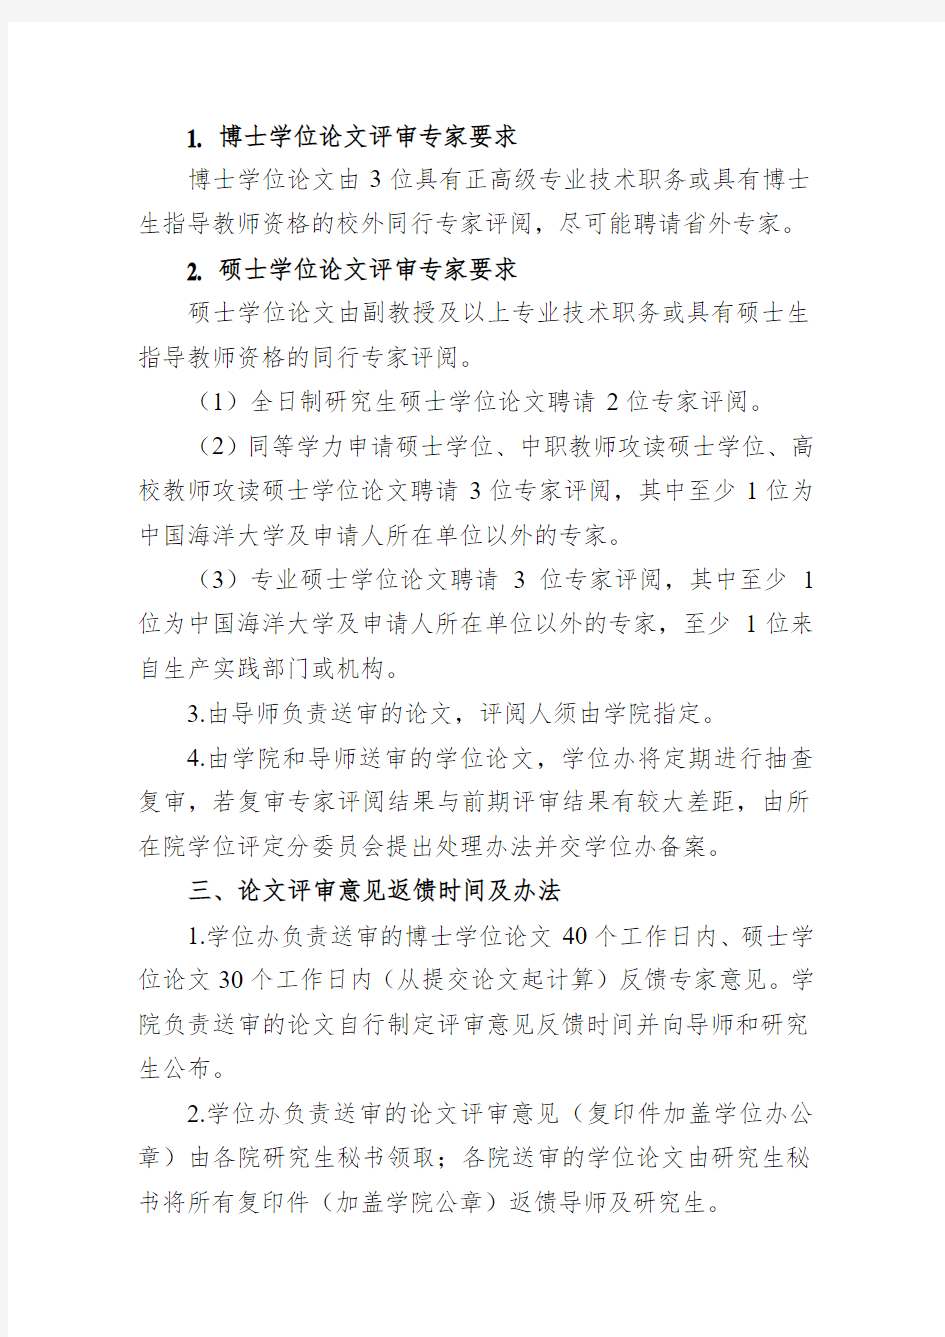 中国海洋大学研究生学位论文评审工作细则(试行)